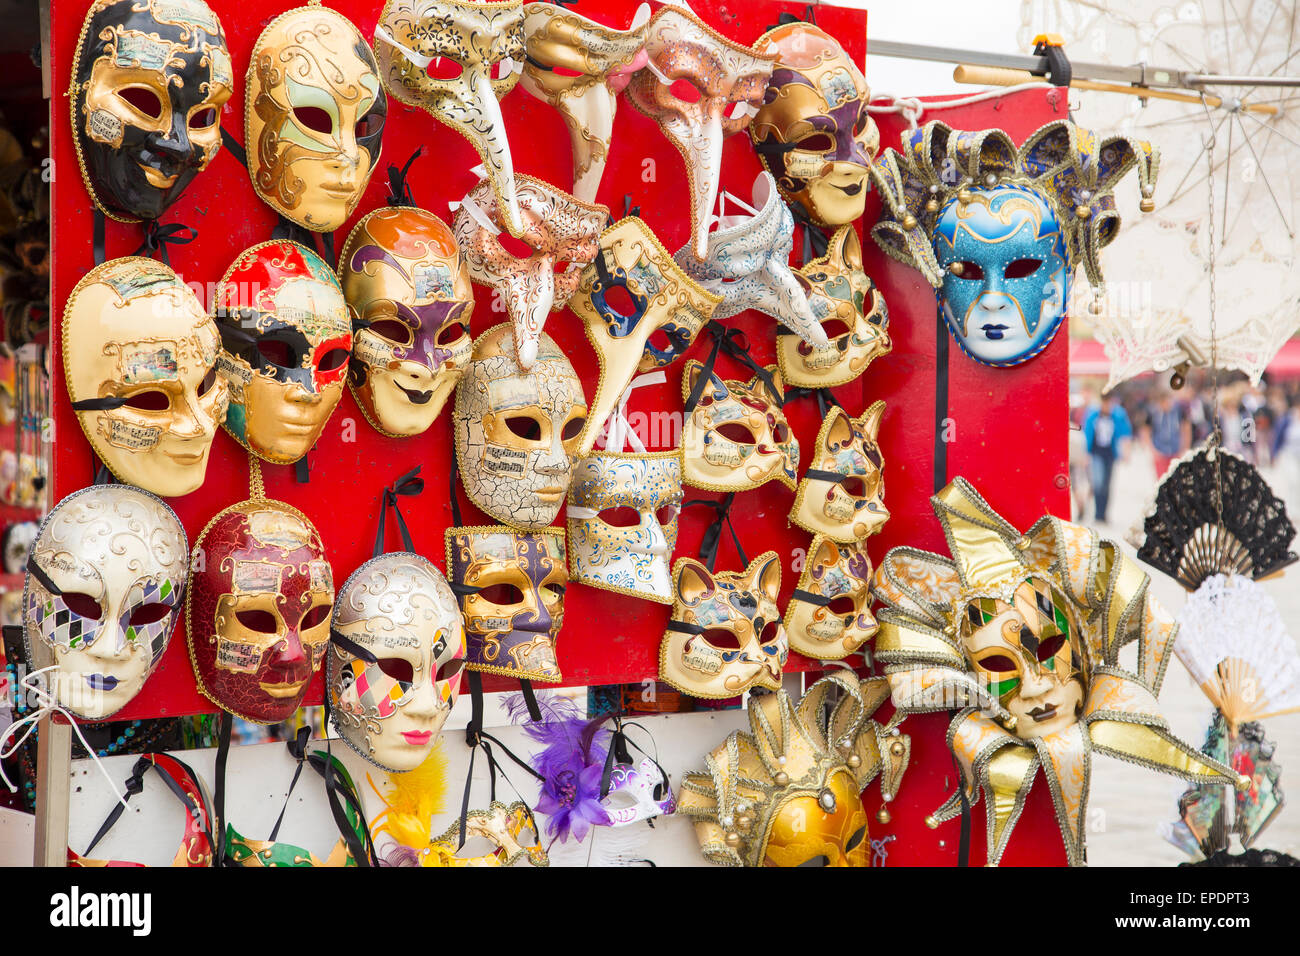 Gruppo di famosi Vintage tradizionale carnevale veneziano maschere closeup in un negozio di strada in corrispondenza di Venezia, Italia Foto Stock